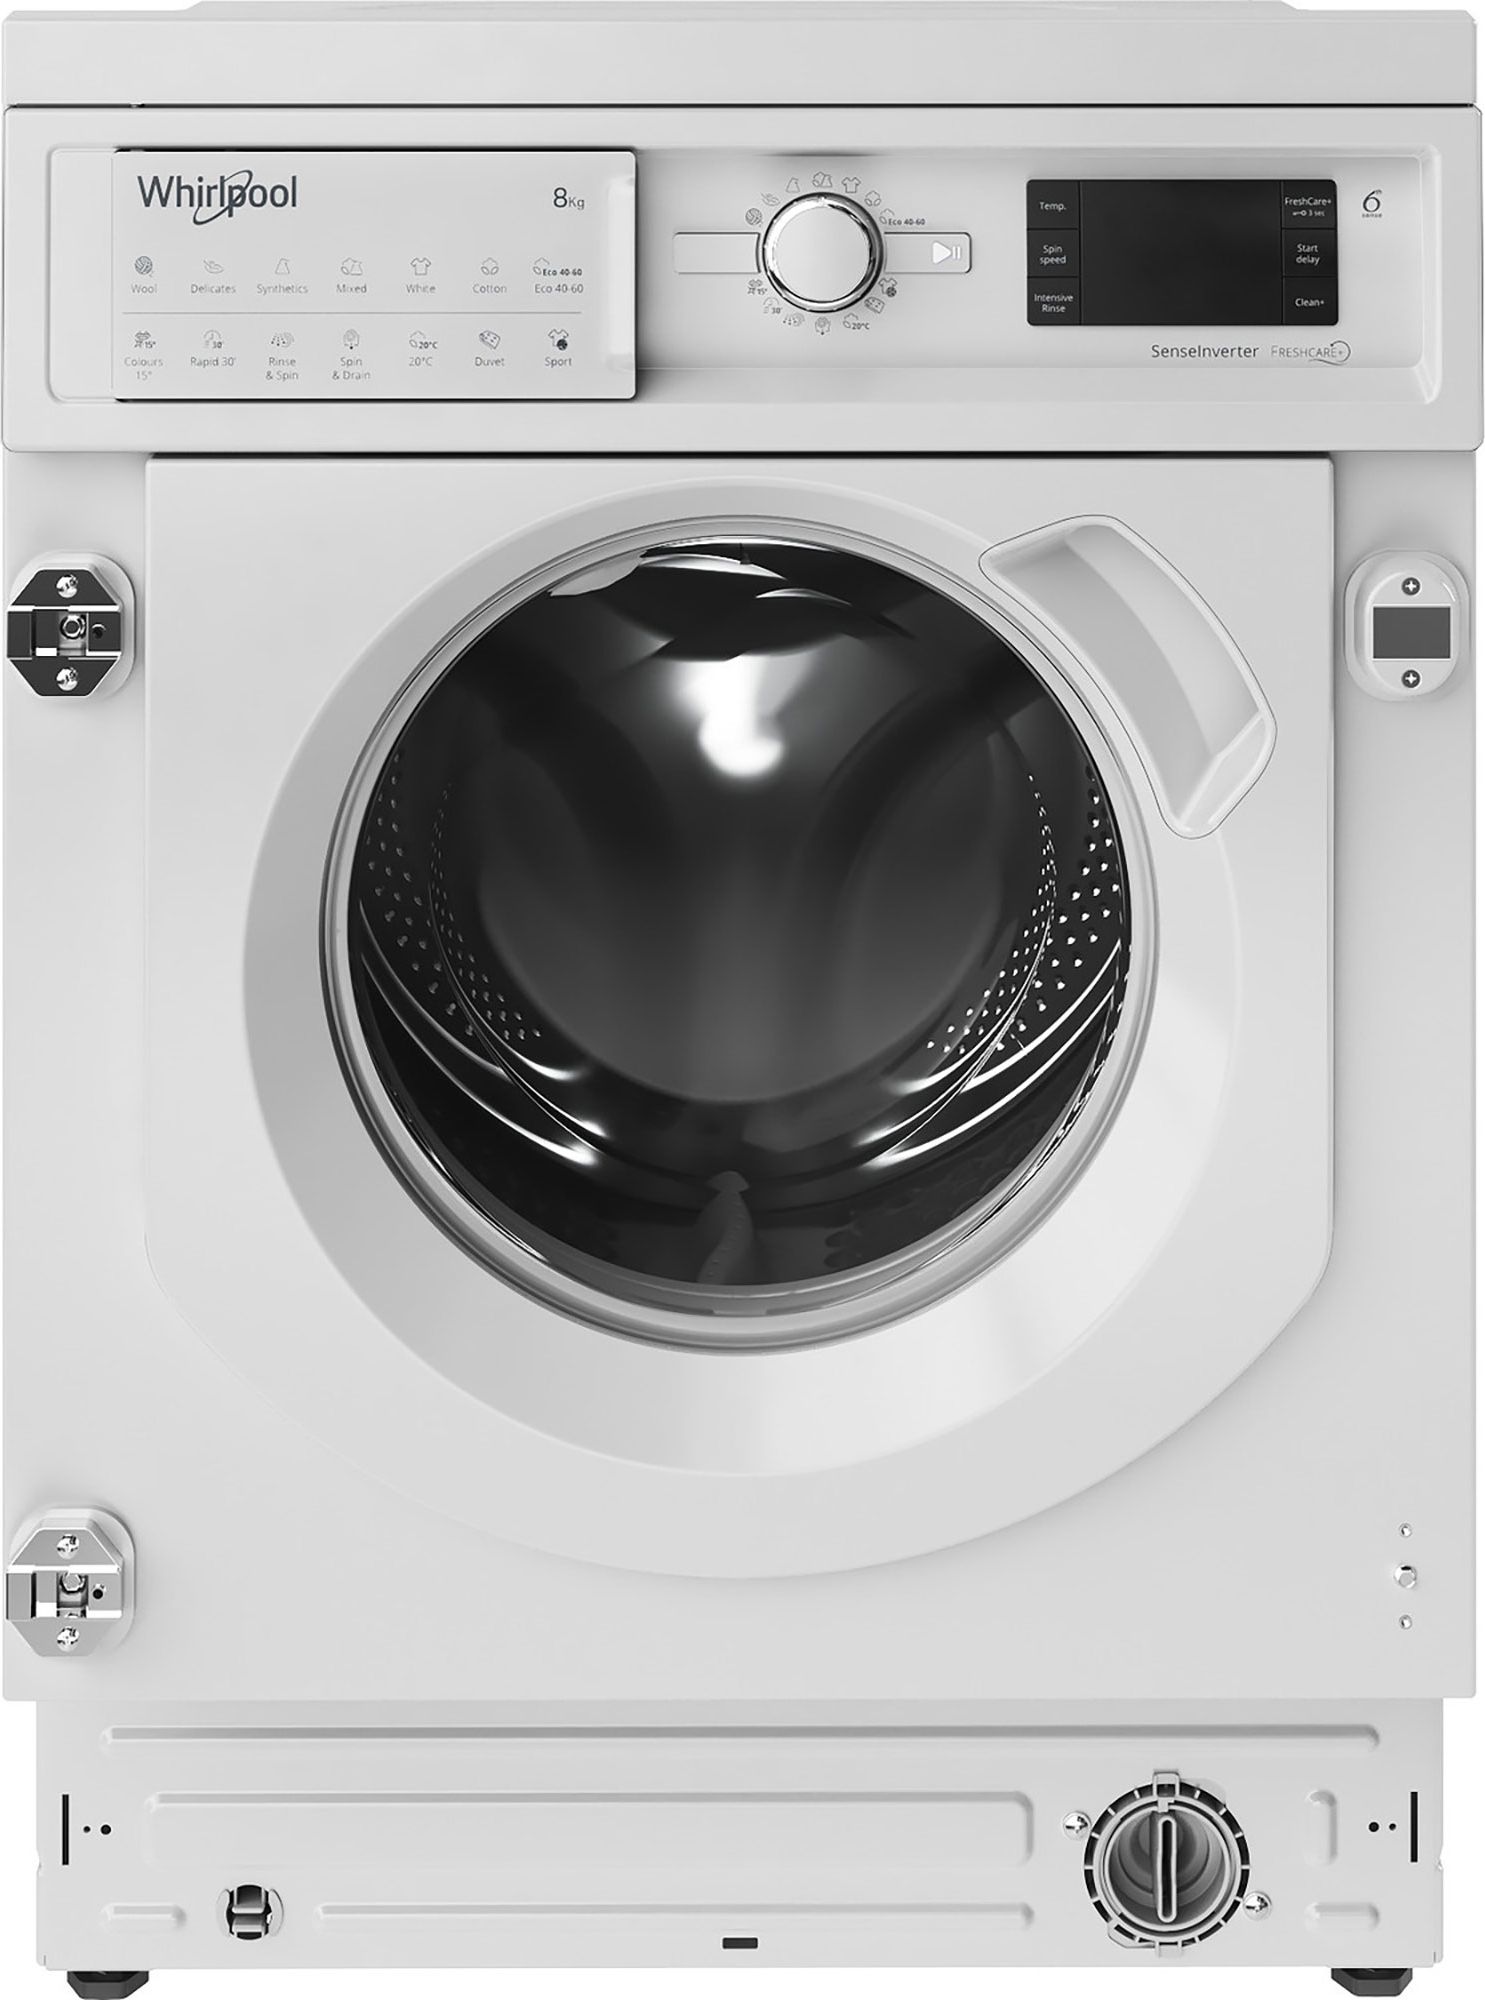 Whirlpool BIWMWG81485UK Integrated 8kg Washing Machine with 1400 rpm - White - B Rated White